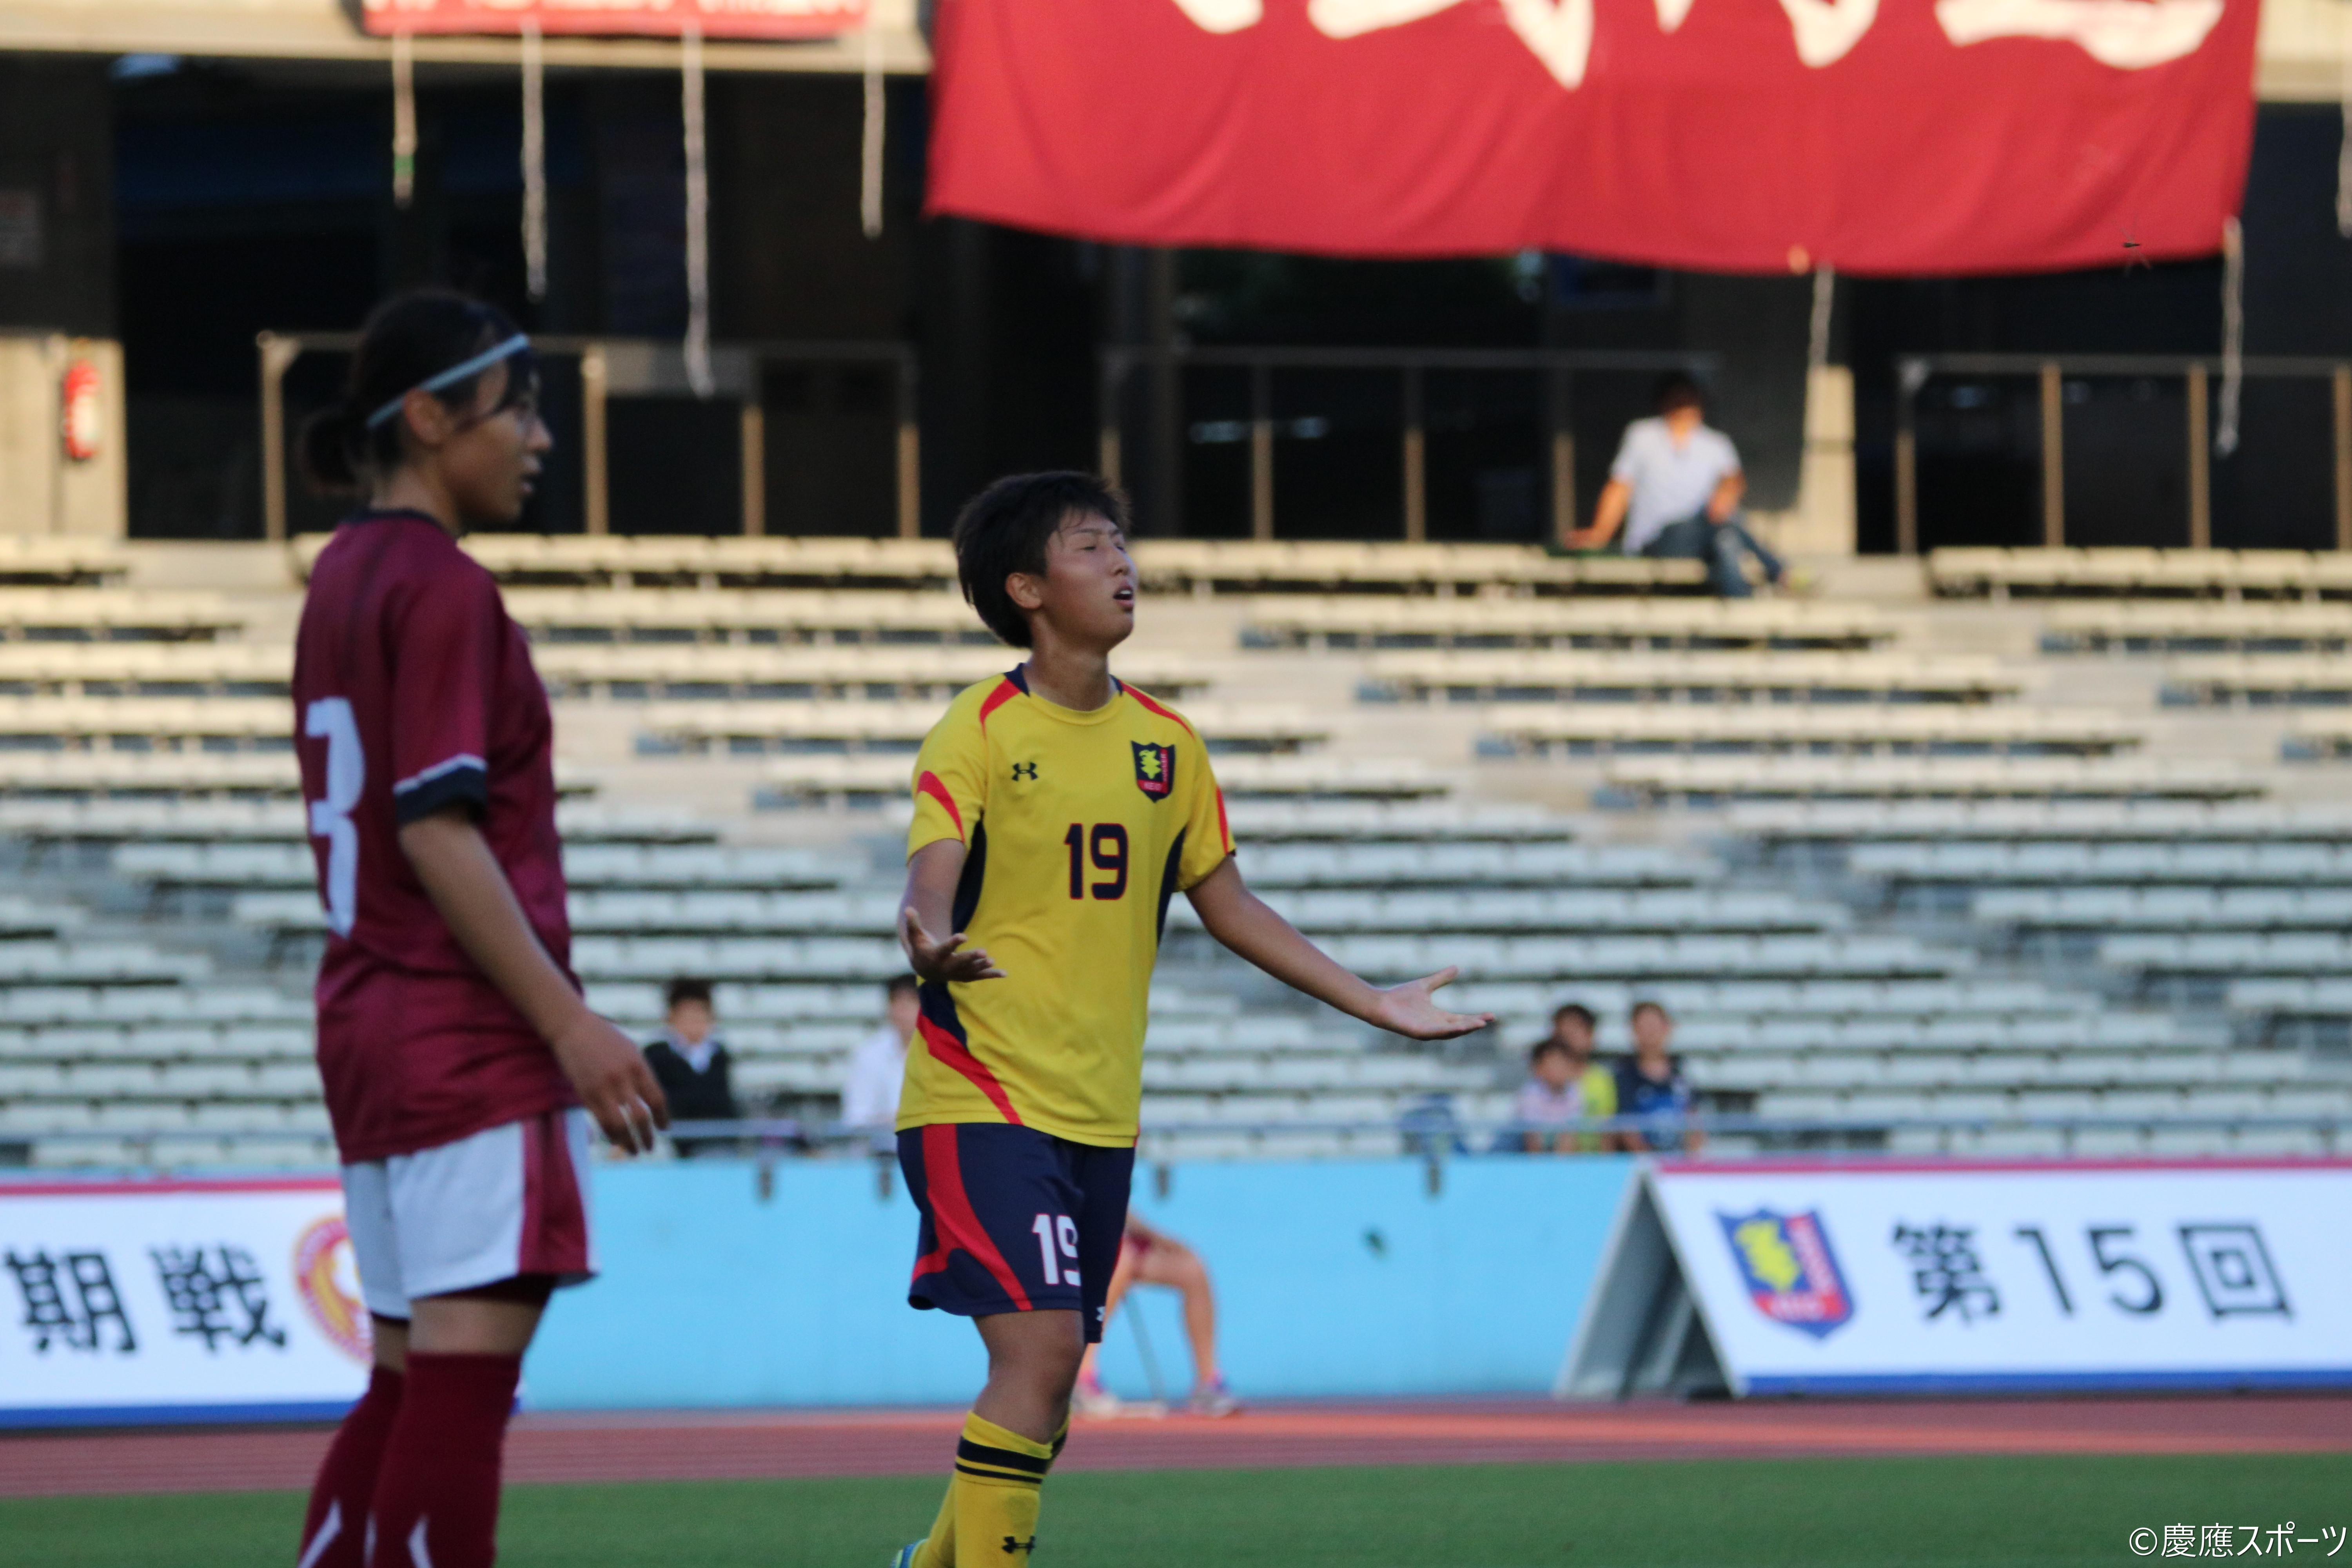 ソッカー女子 大きな収穫 敗戦するも溢れたゴールへの意欲 第15回早慶女子サッカー定期戦 Keio Sports Press